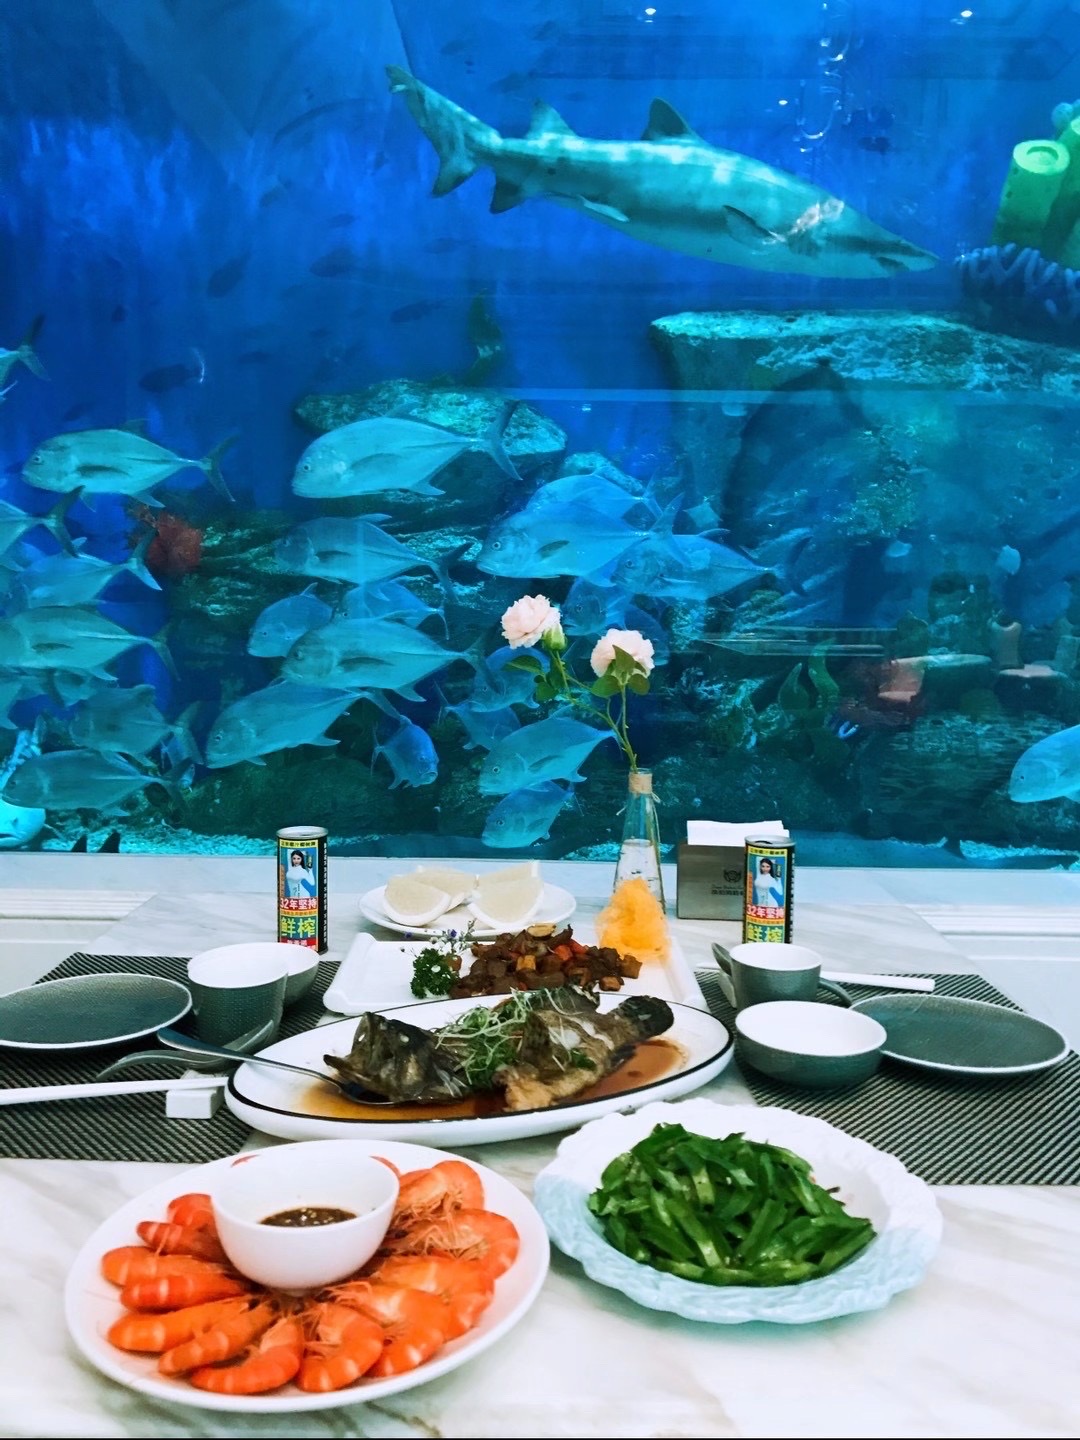 三亚海底餐厅叫什么名字,三亚问题,马尔代夫旅游 - wee旅